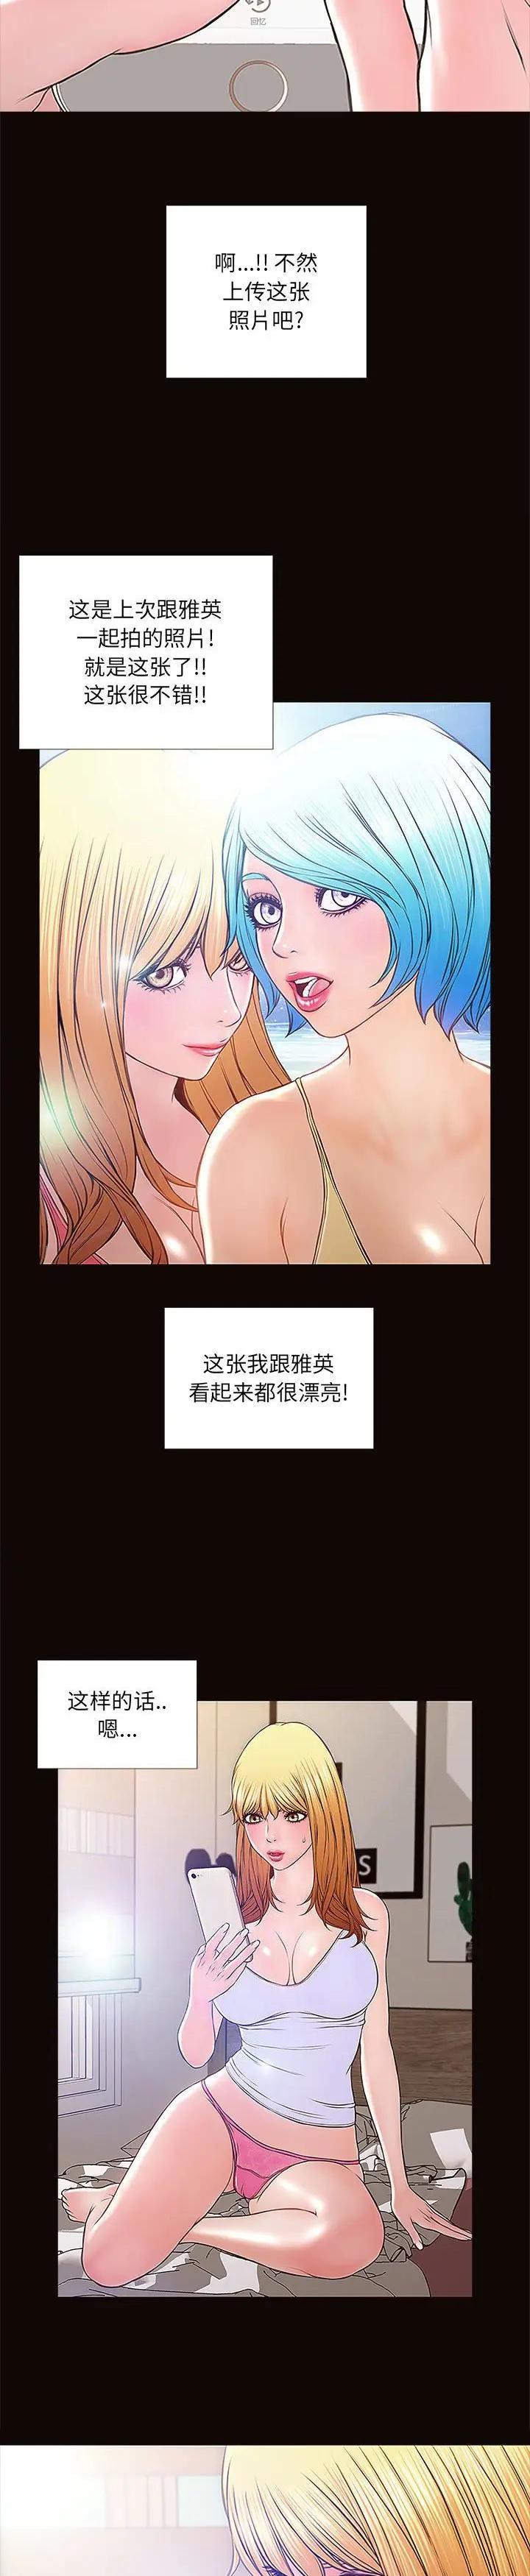 《网红出头天(网红吴妍智)》漫画 第4话